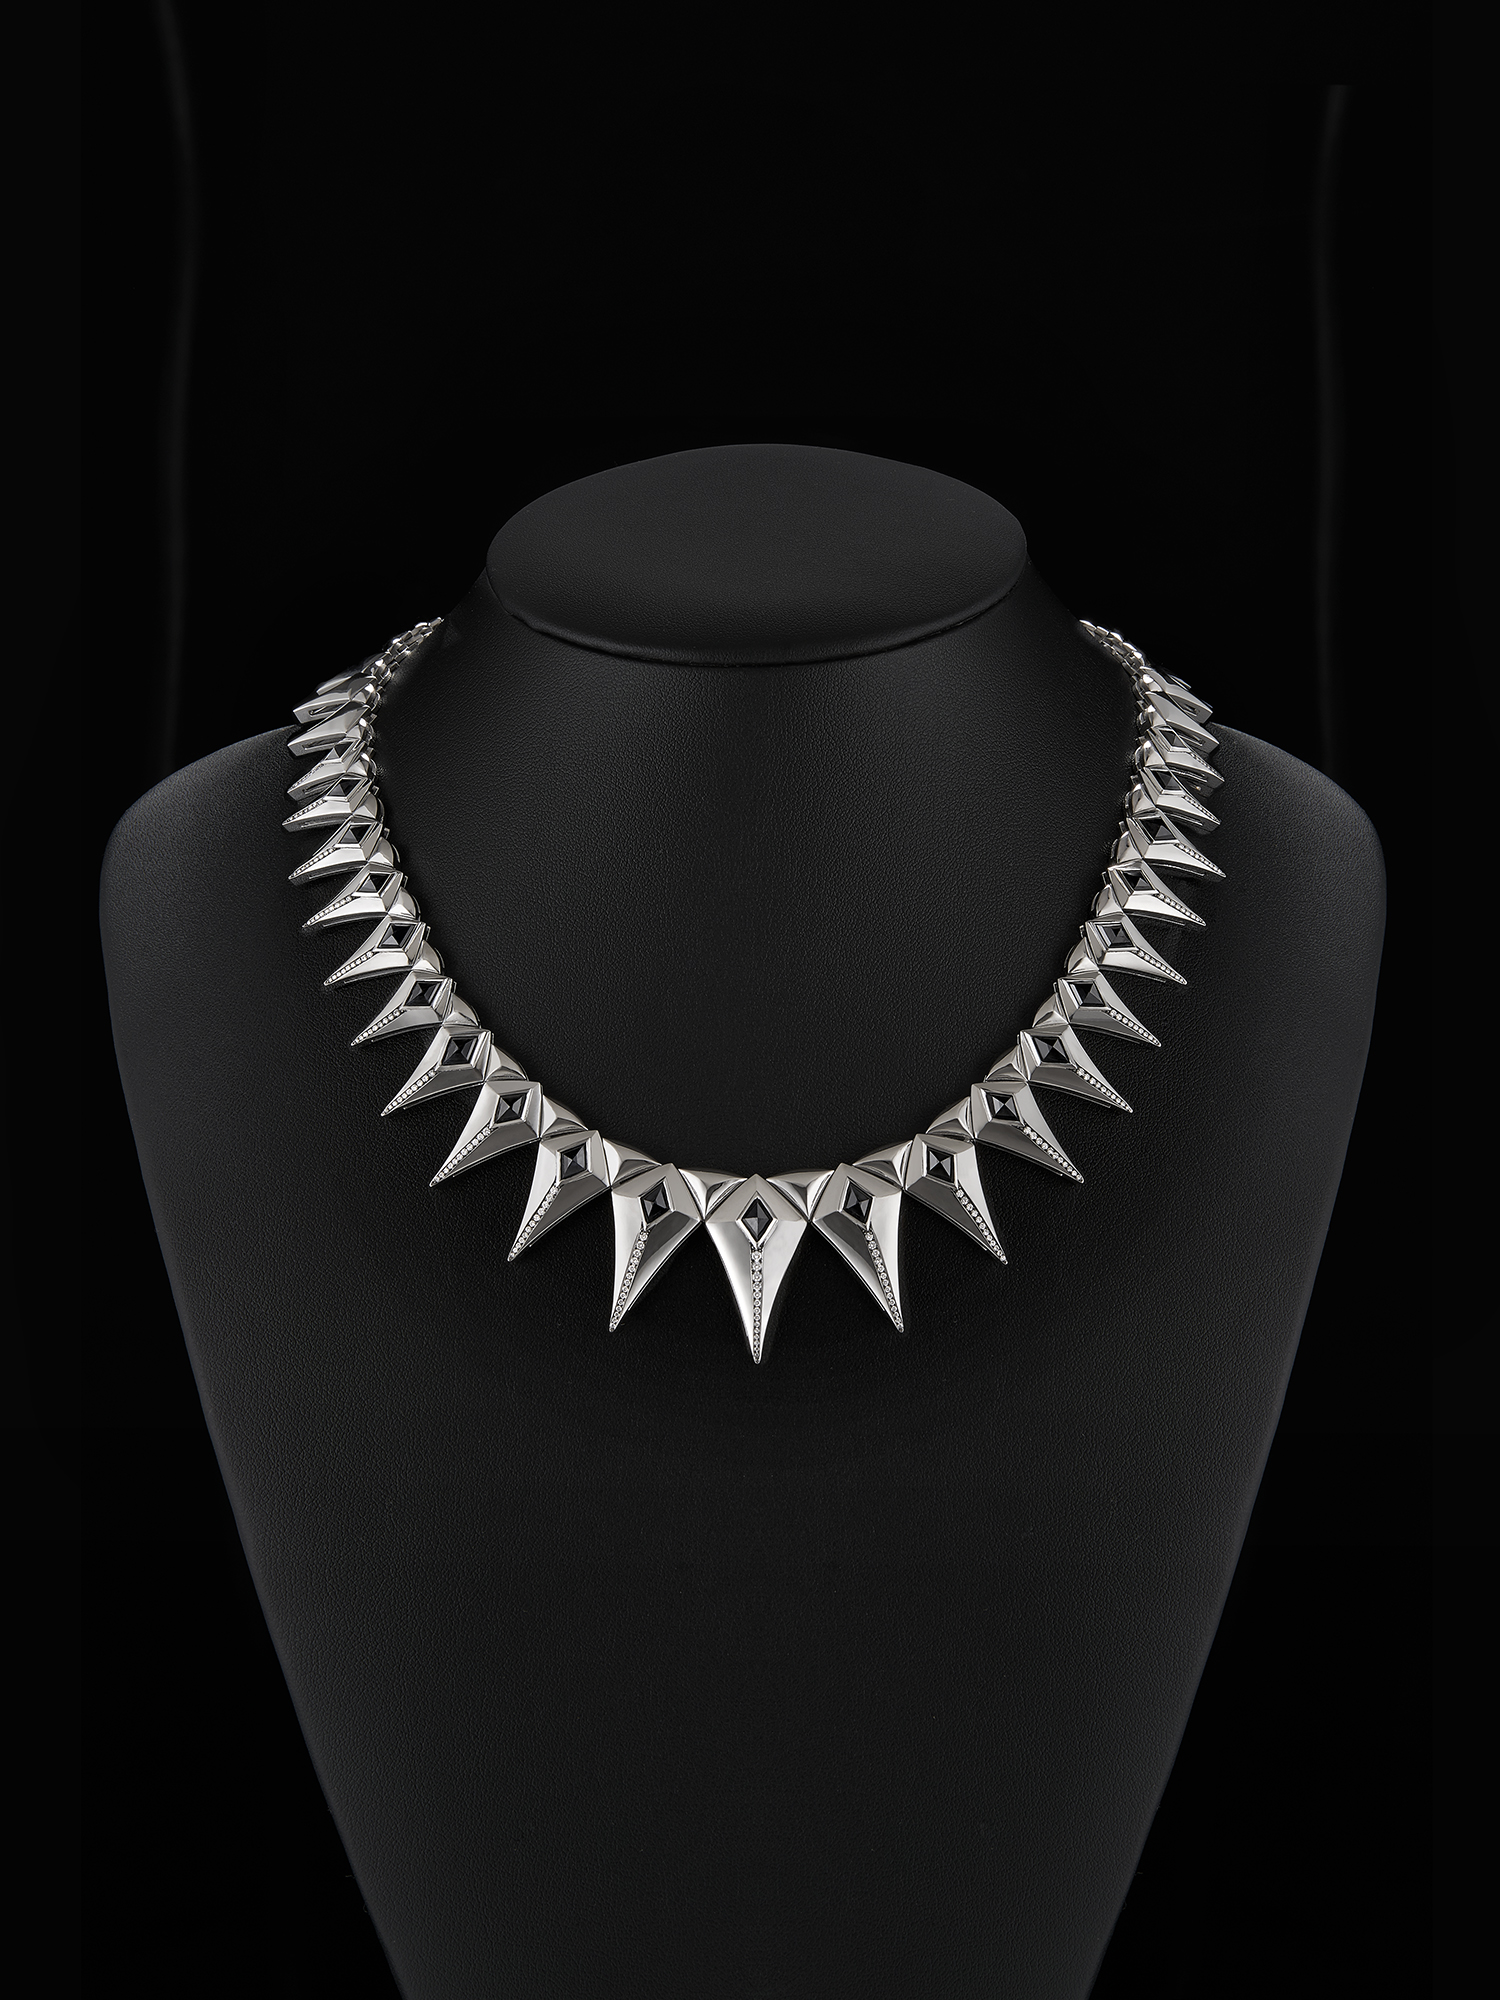 British-based Designer Justine Cullen's Midnight Necklace